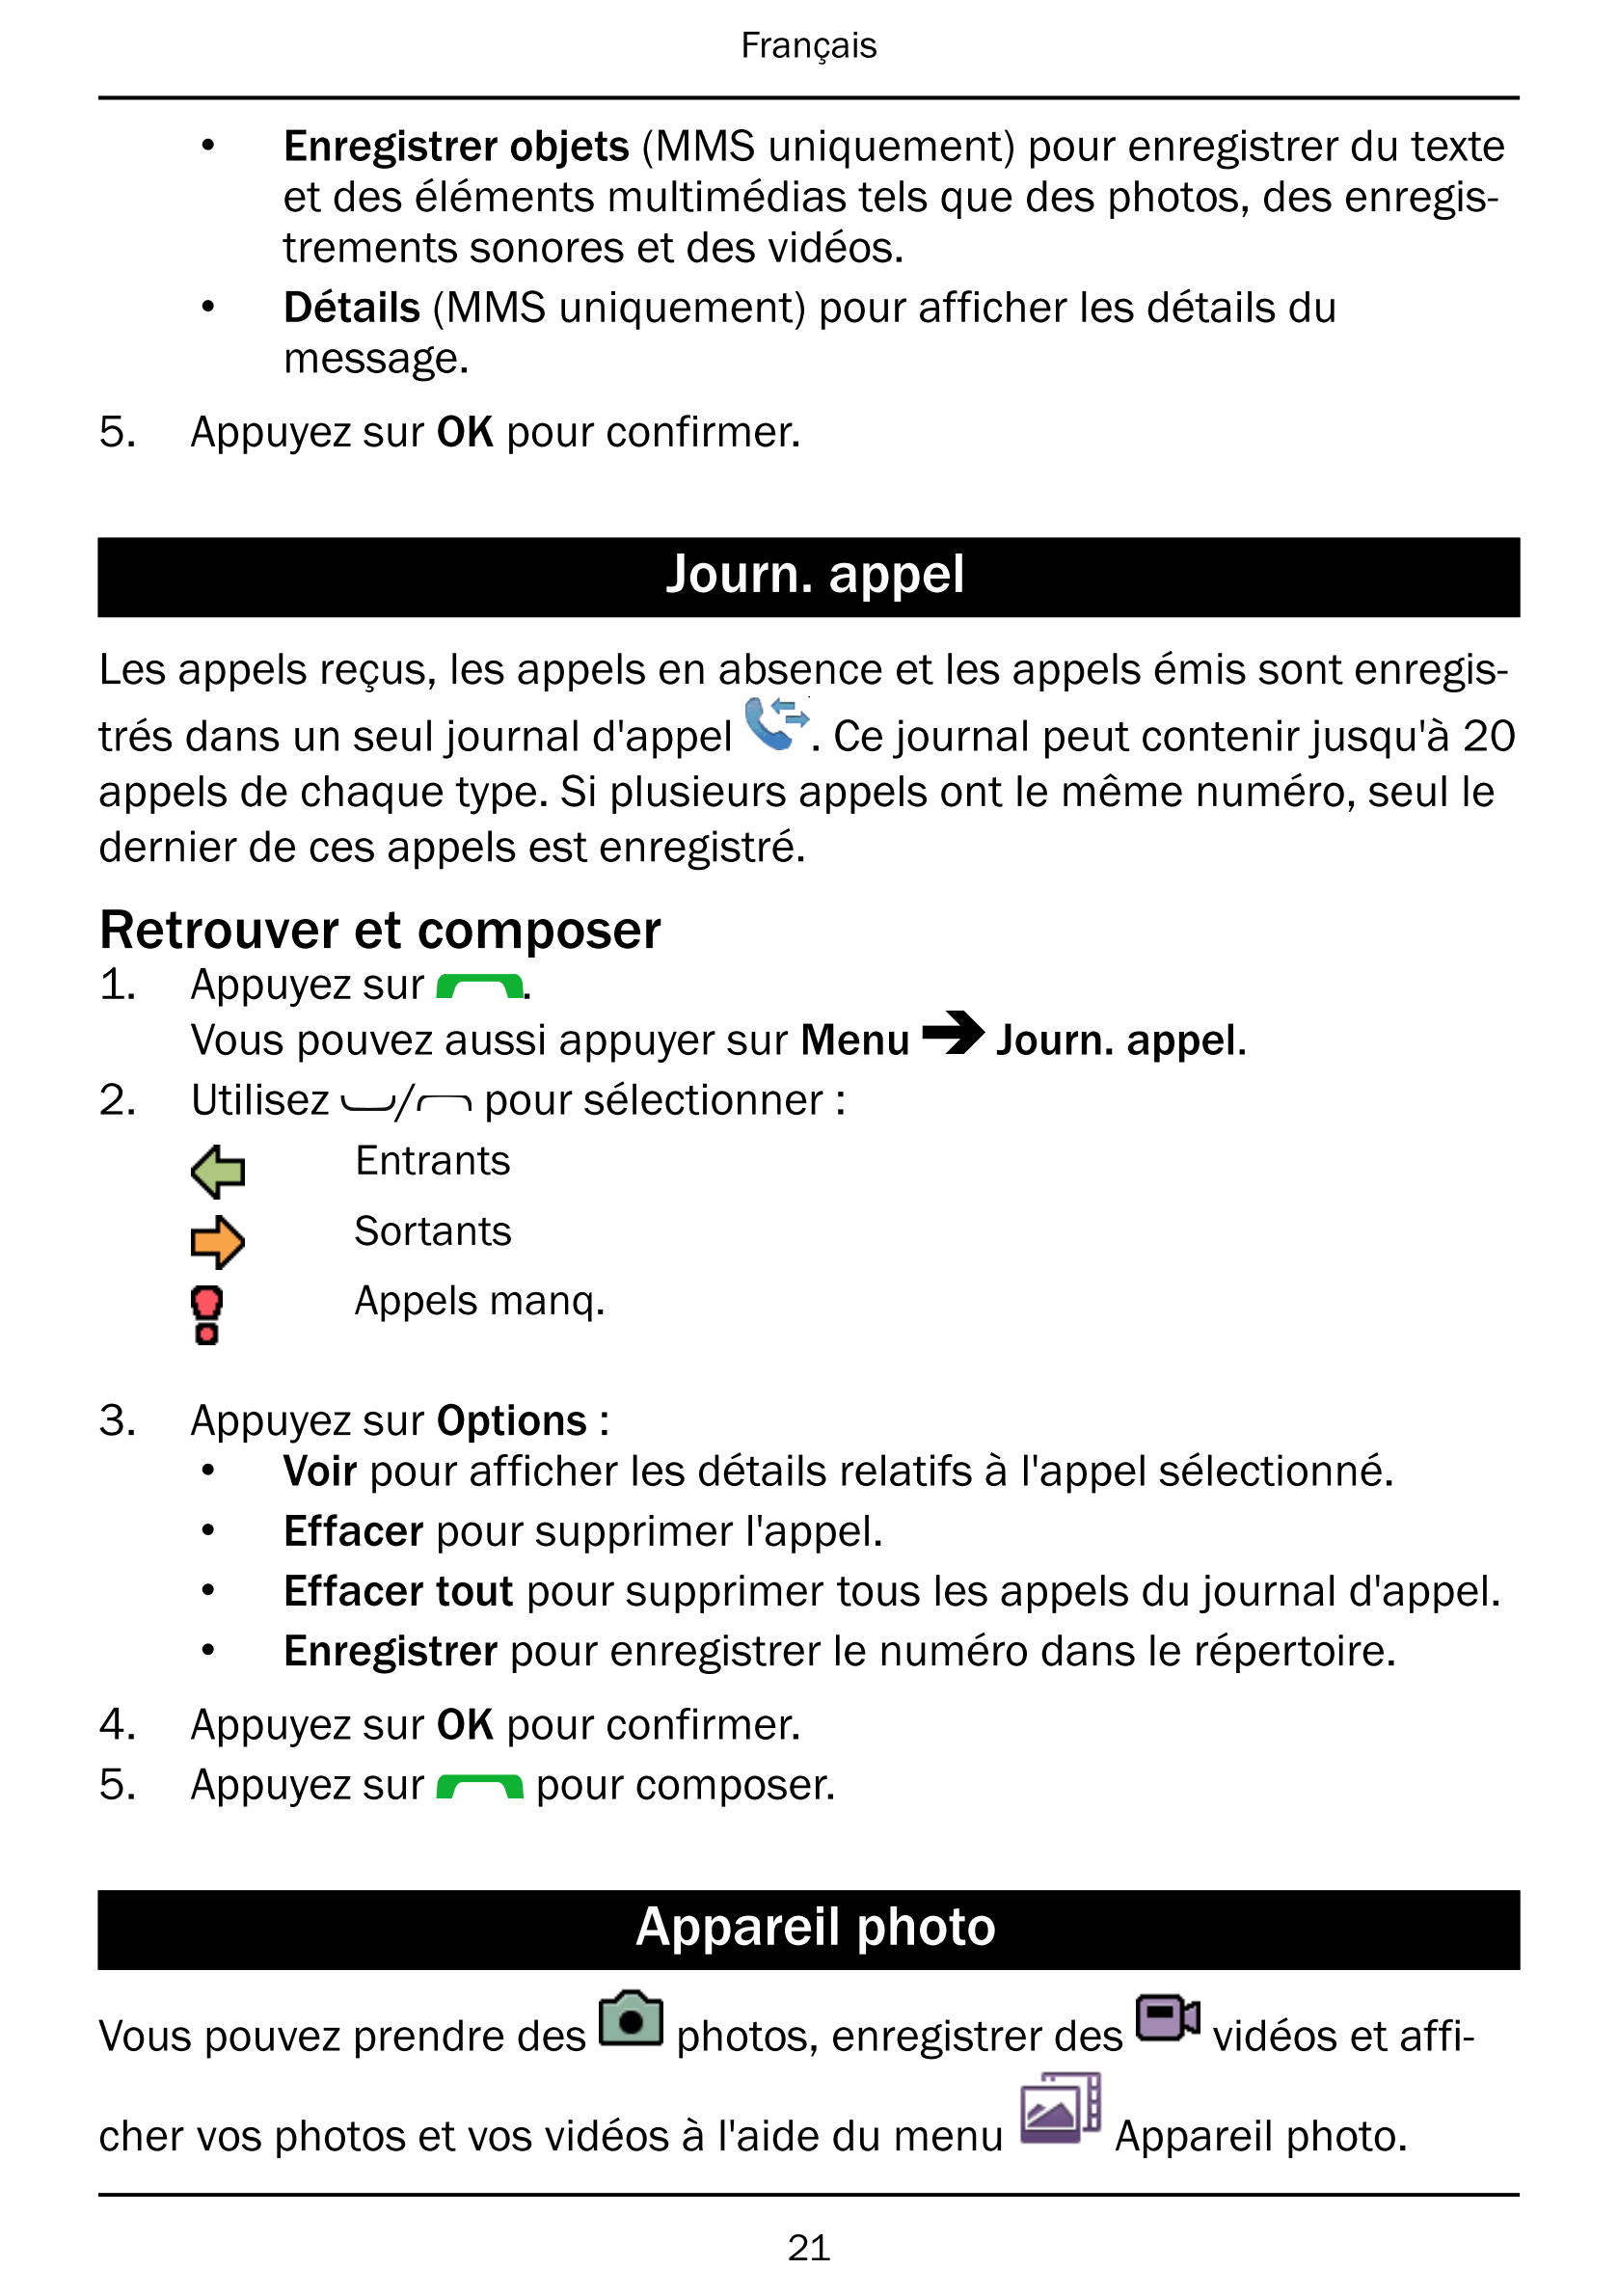 Français
• Enregistrer objets (MMS uniquement) pour enregistrer du texte
et des éléments multimédias tels que des photos, des en